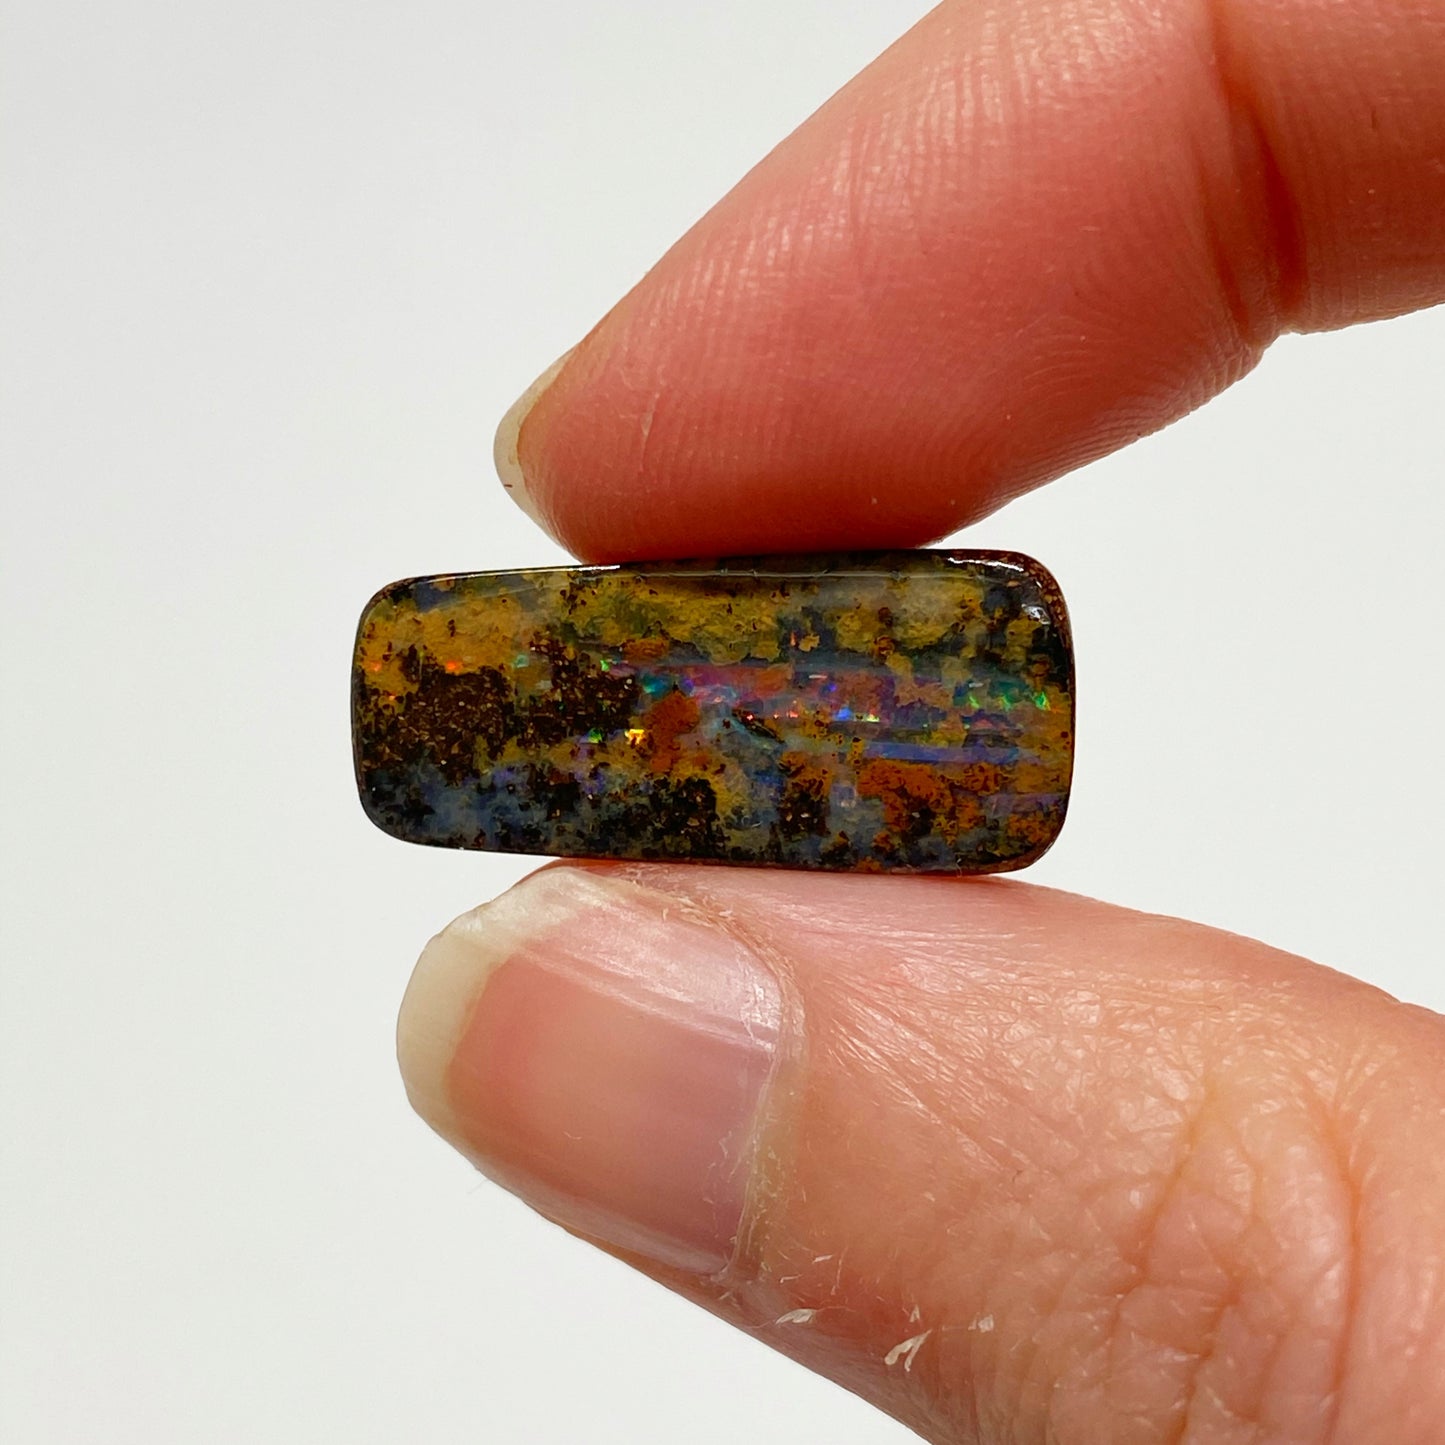 Australian Boulder Opal - 8.40 Ct smalll matrix boulder opal - Broken River Mining